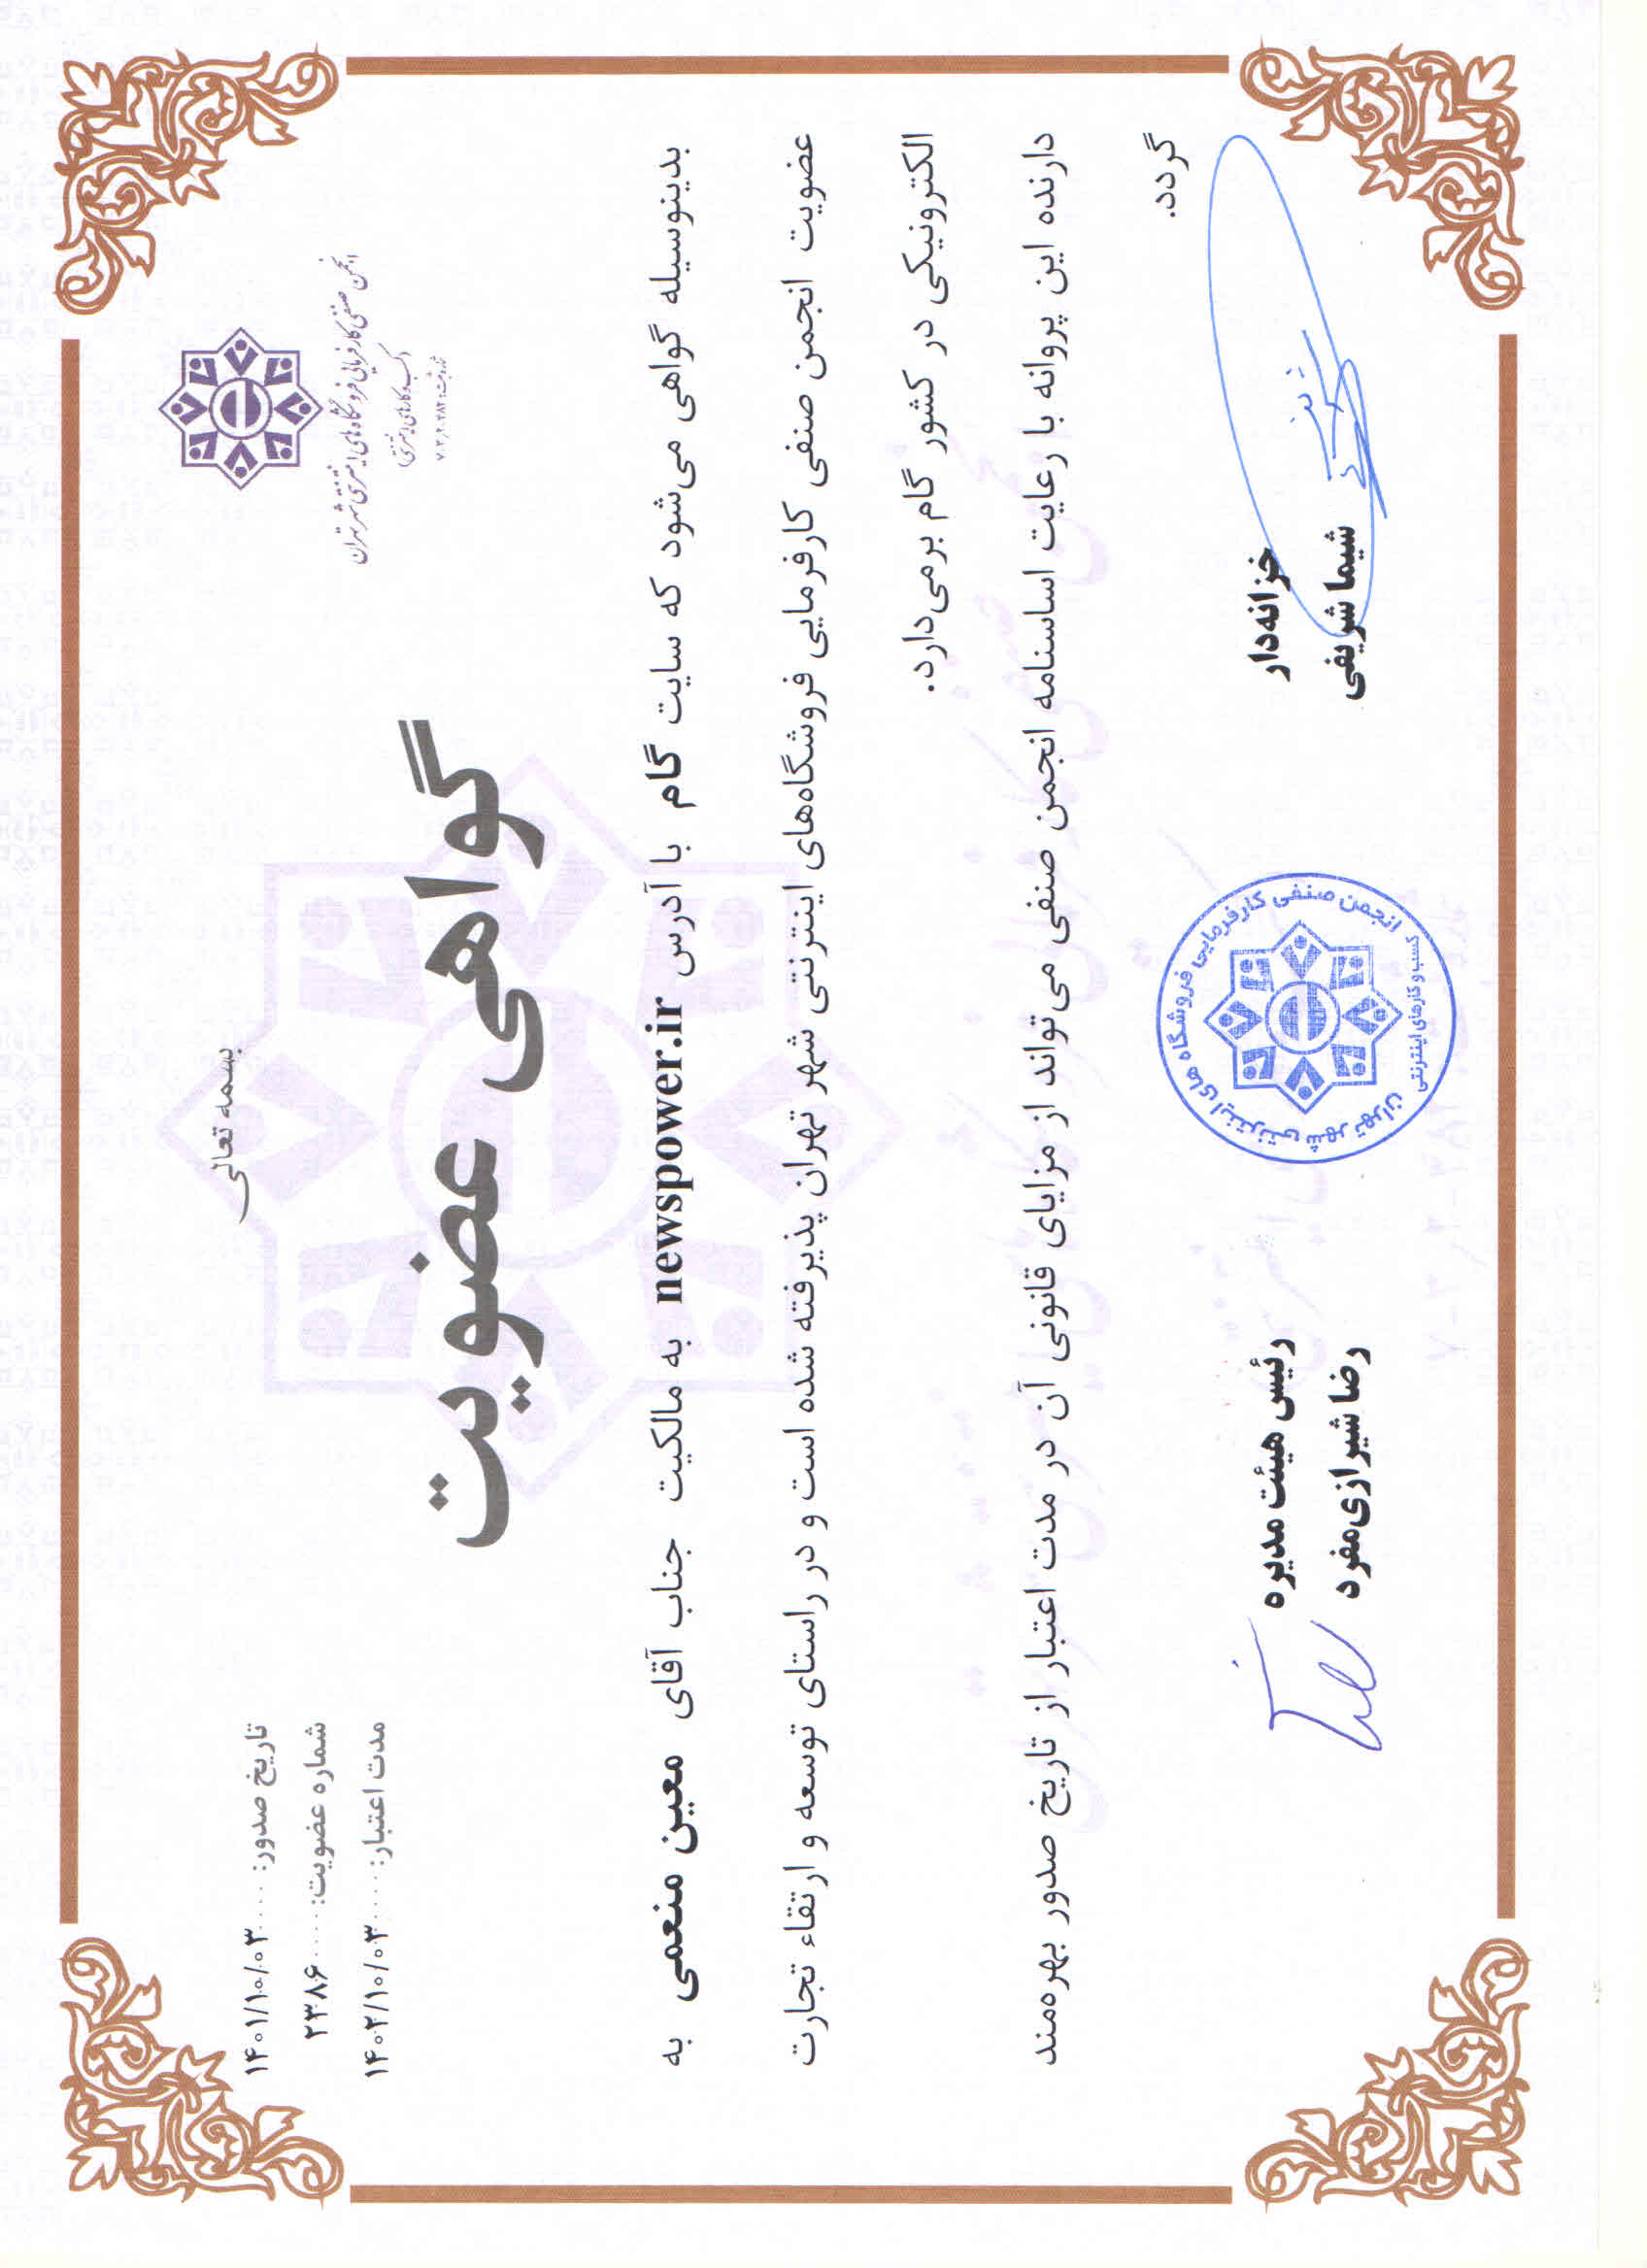 نیوزپاور عضو انجمن صنفی کارفرمایی فروشگاه های اینترنتی شهر تهران